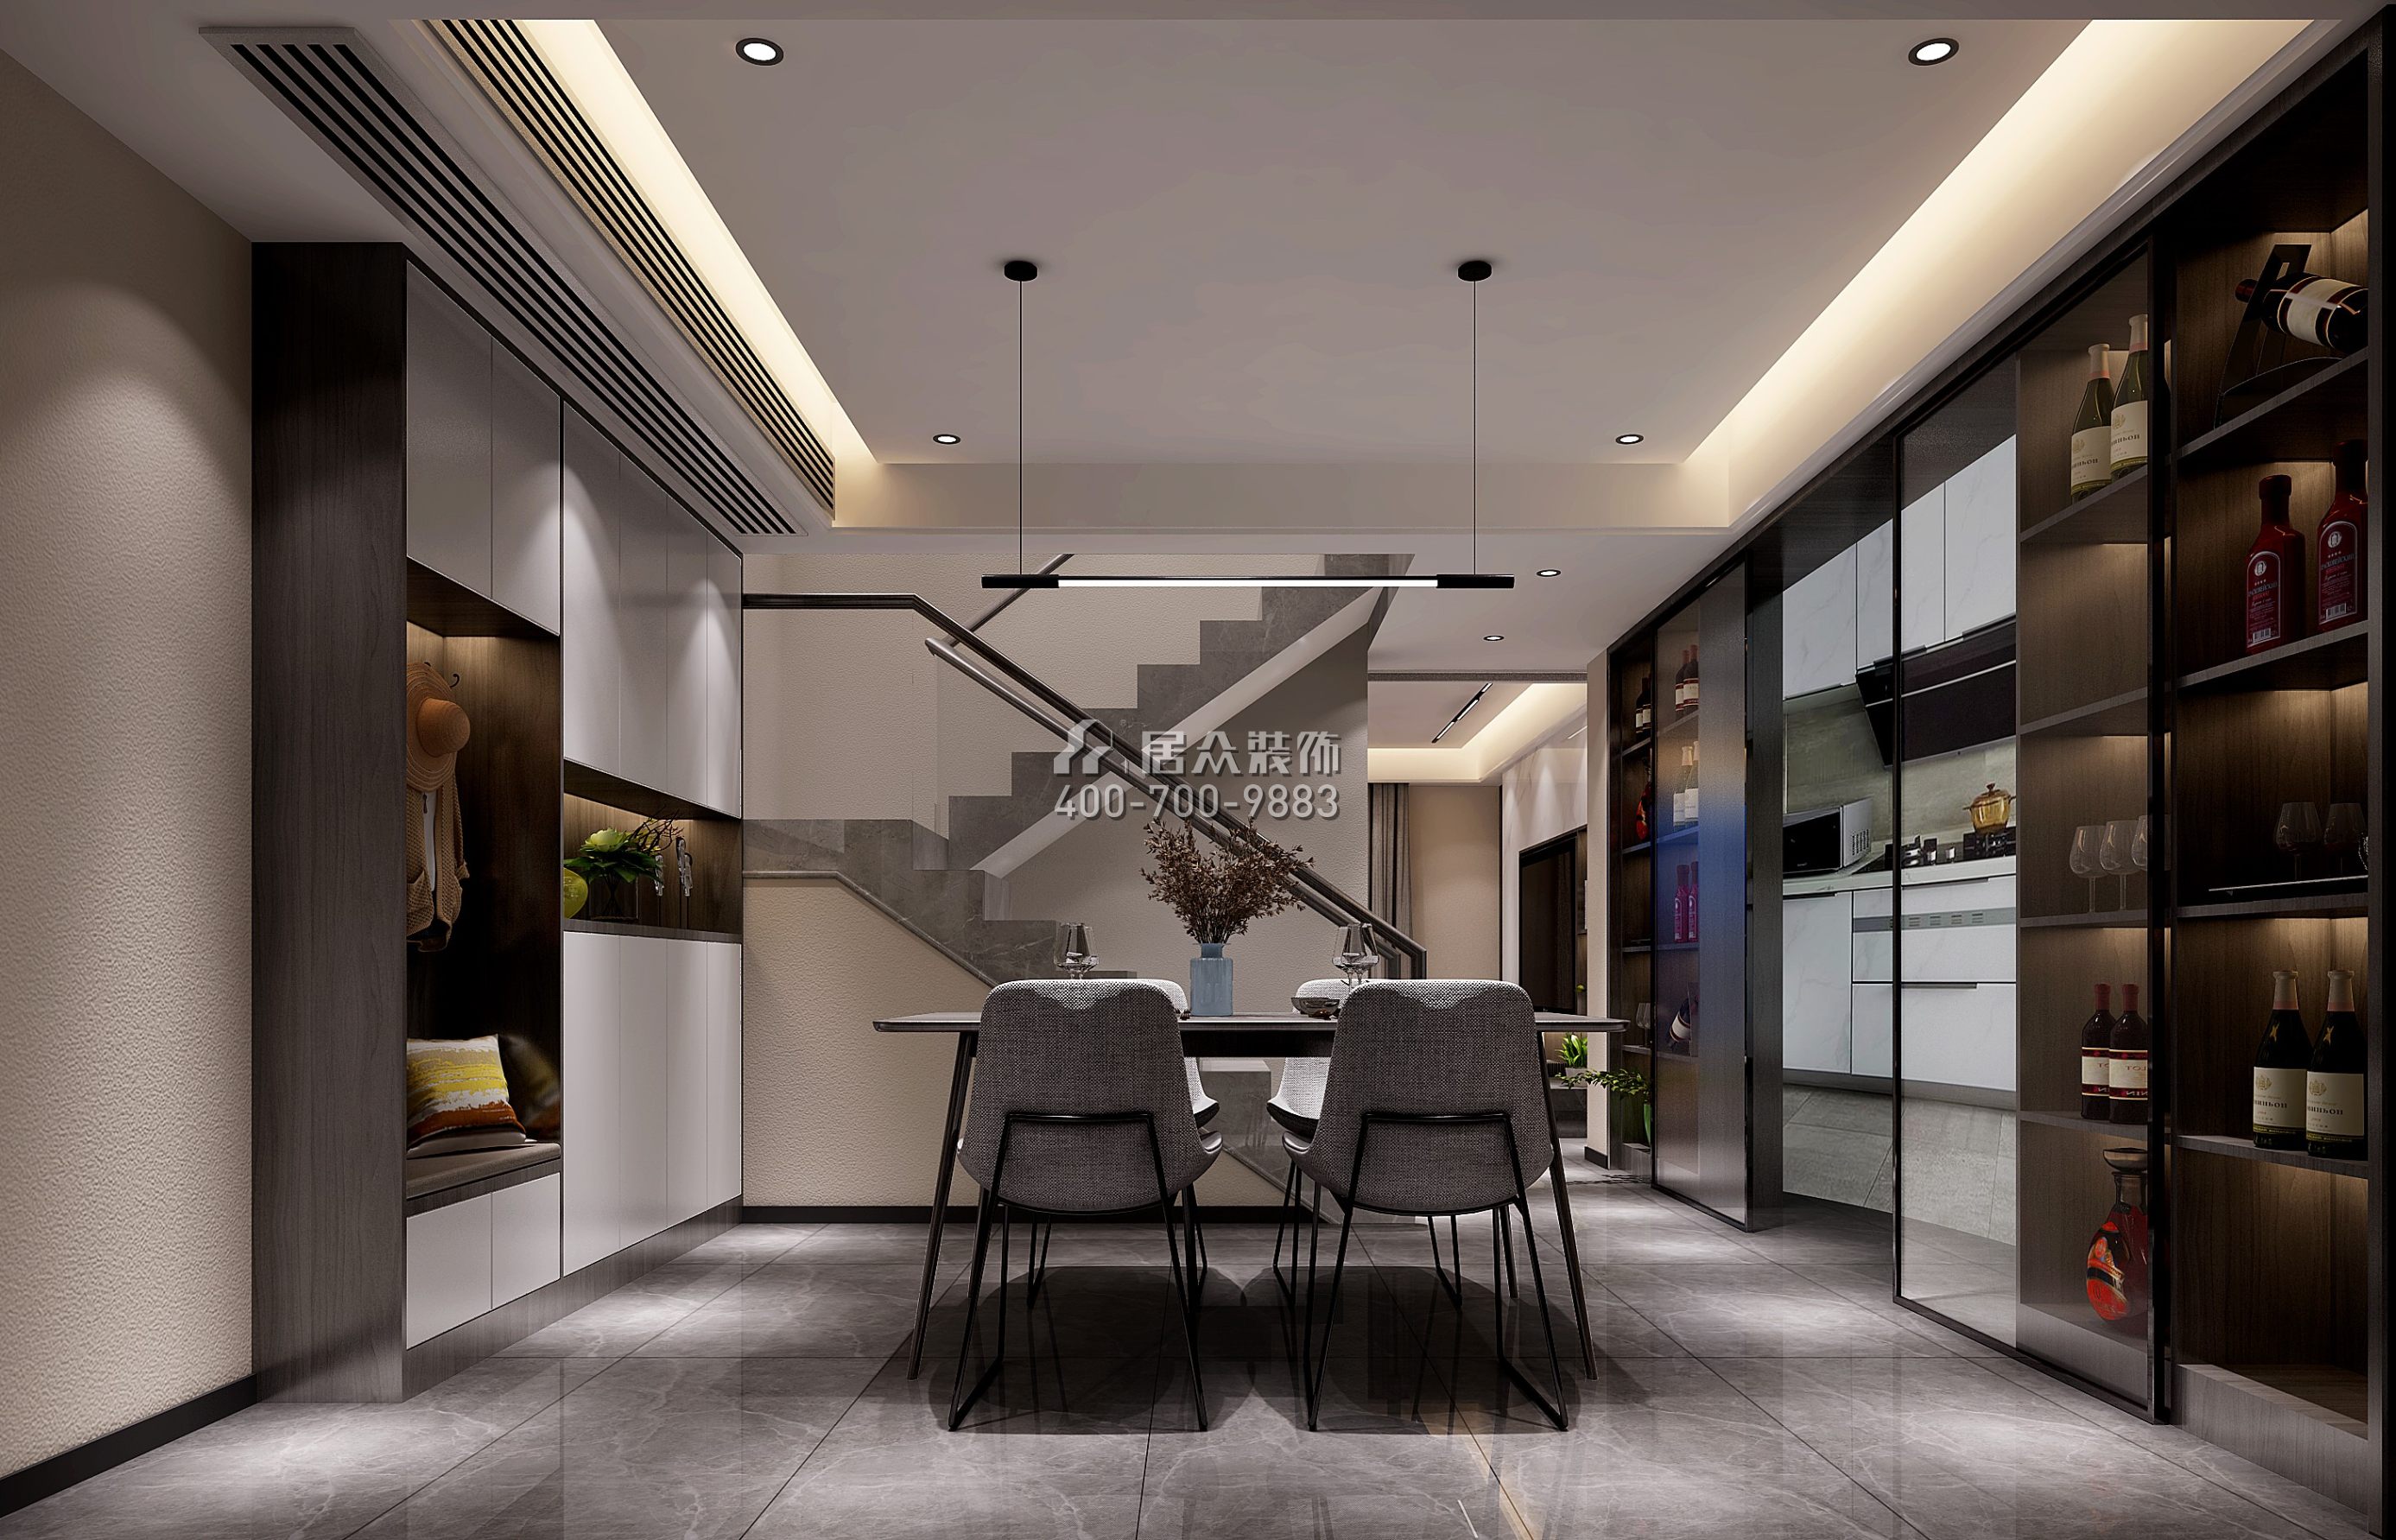 林村公寓150平方米现代简约风格复式户型餐厅装修效果图